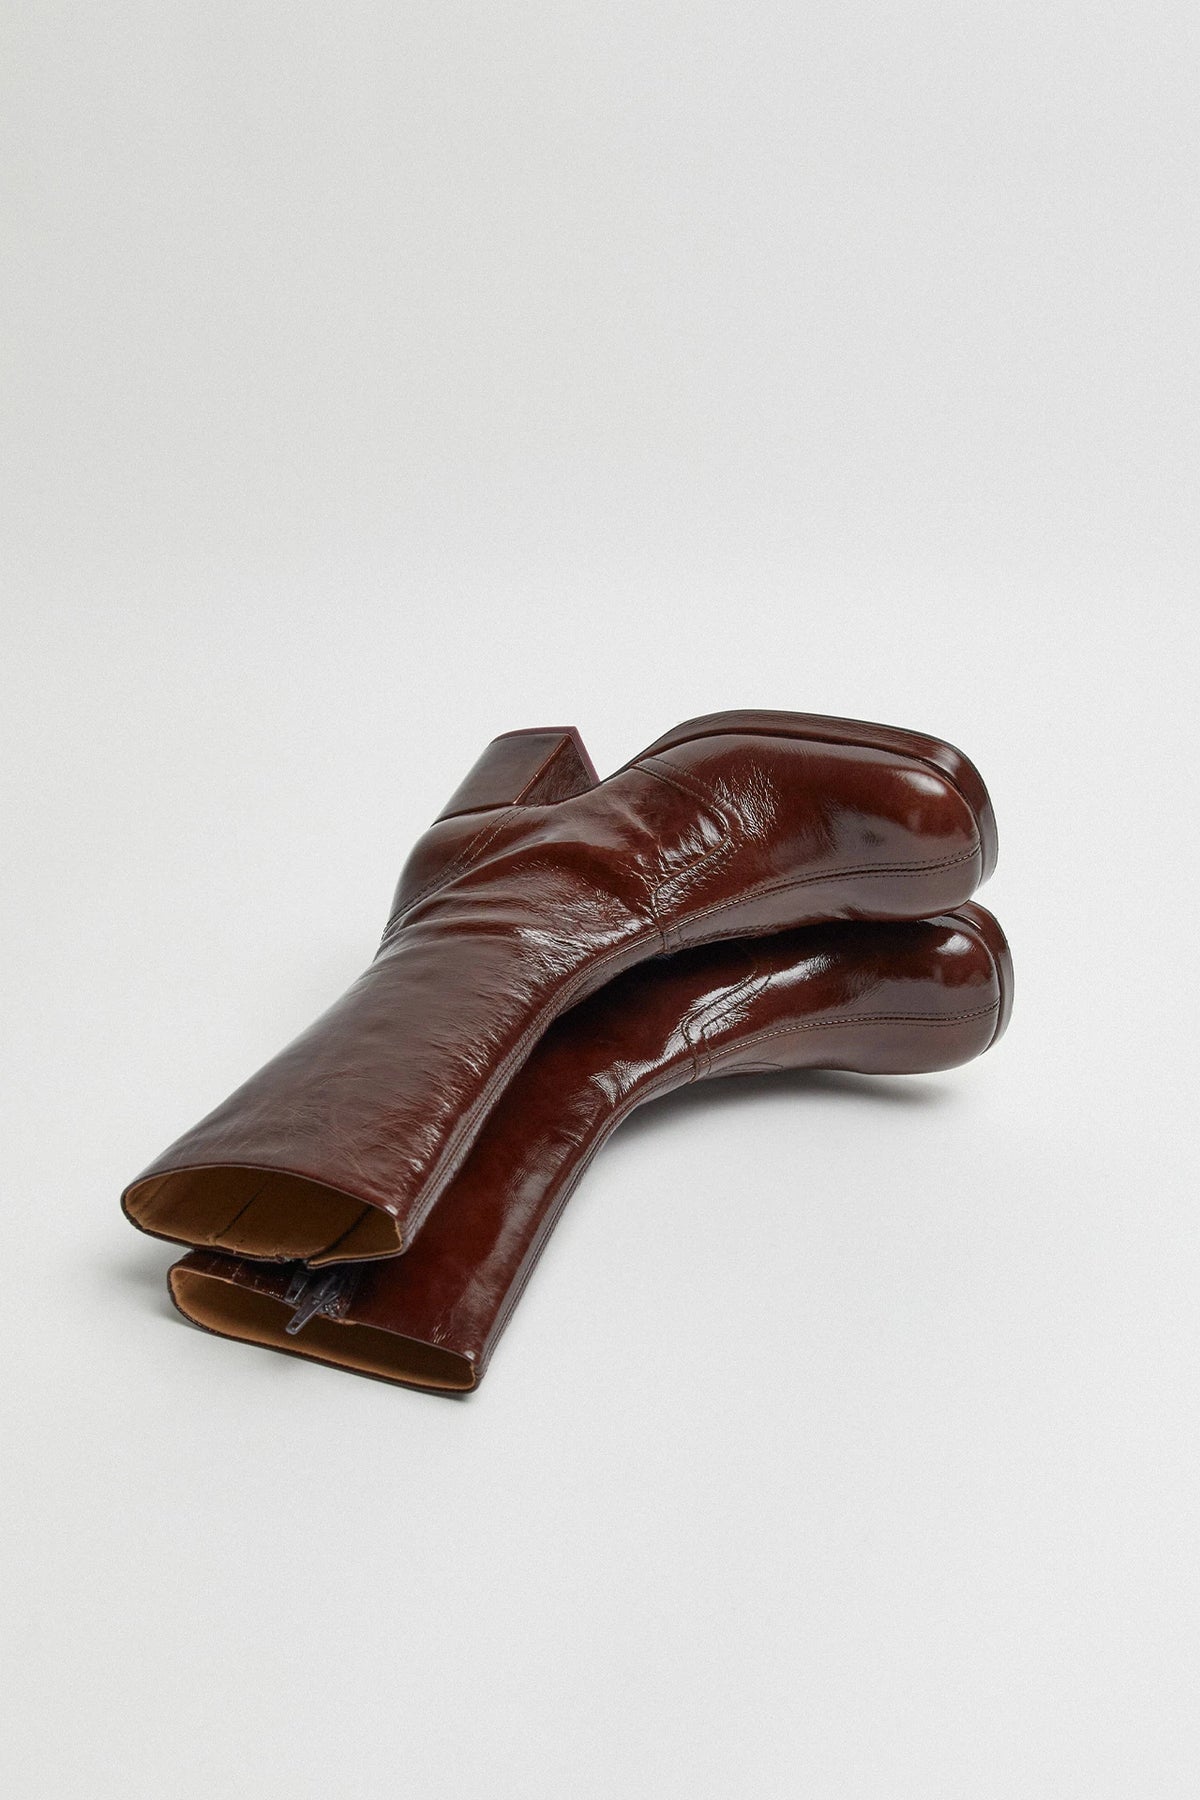 Miista Cass Boots // Brown Patent